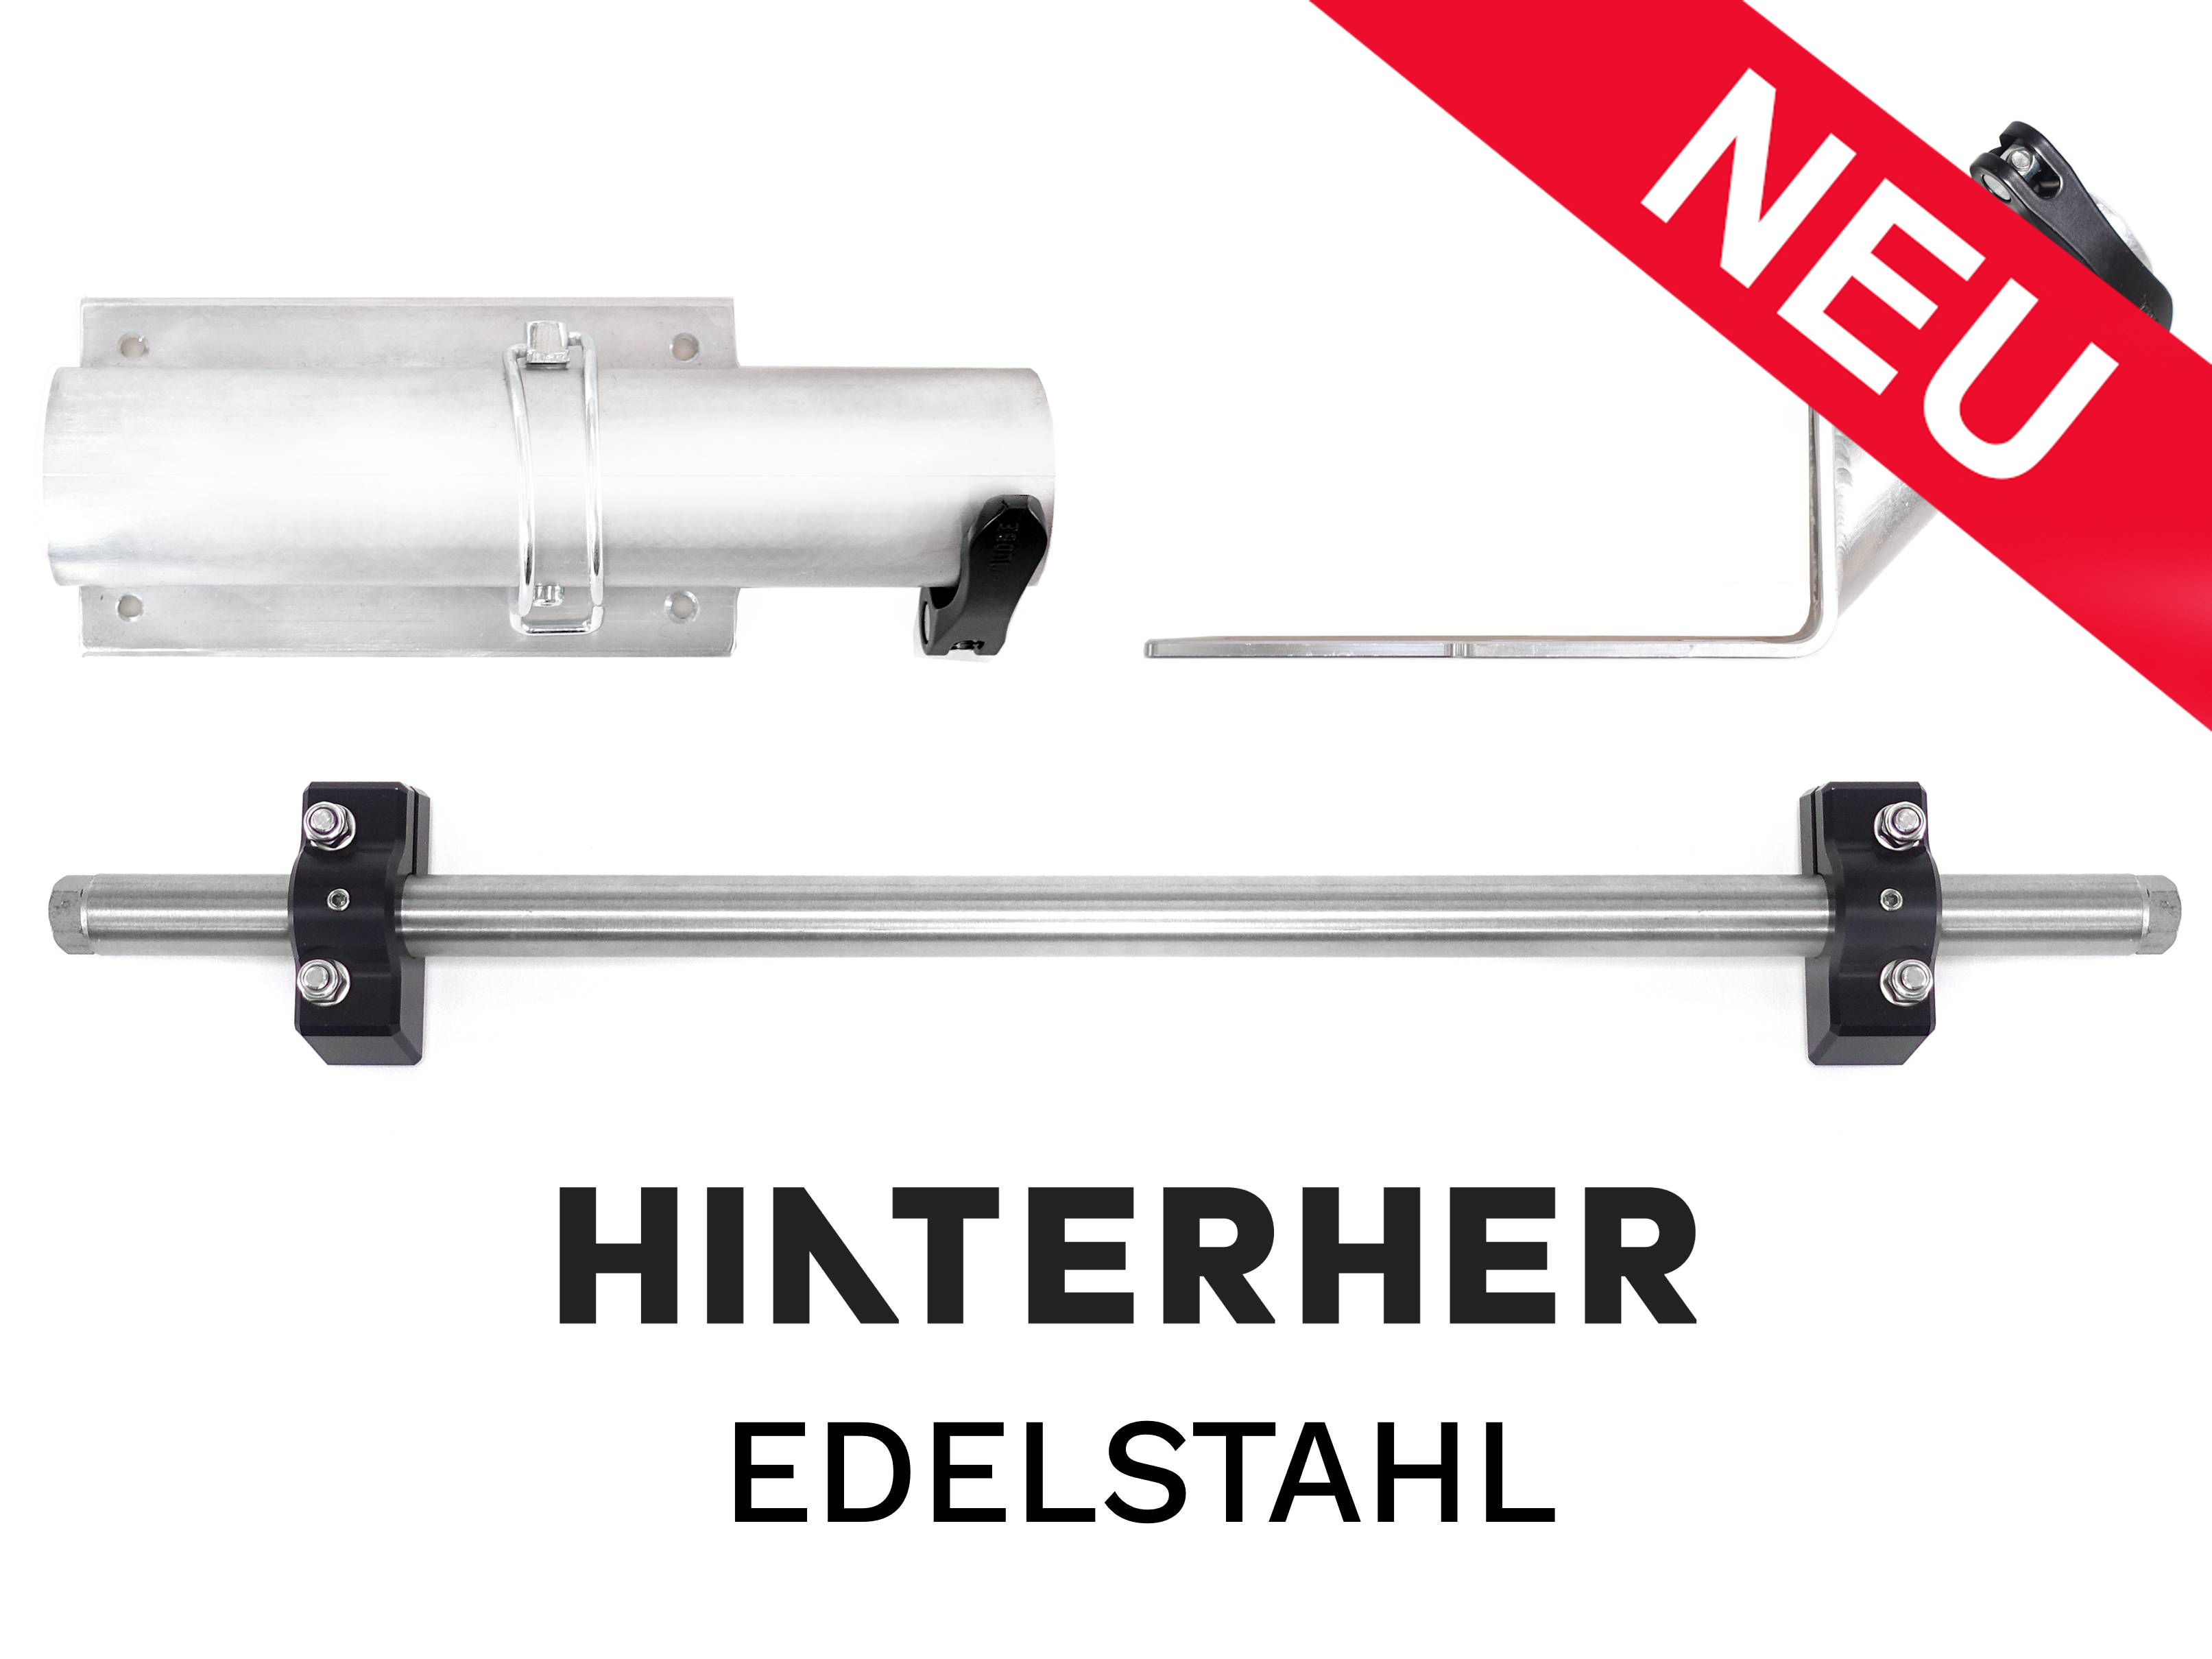 Upgrade SL-Edelstahl-Deichsel (Hinterher-Kupplung) inkl. Handwagenfunktion Boxenanhänger 156 Liter